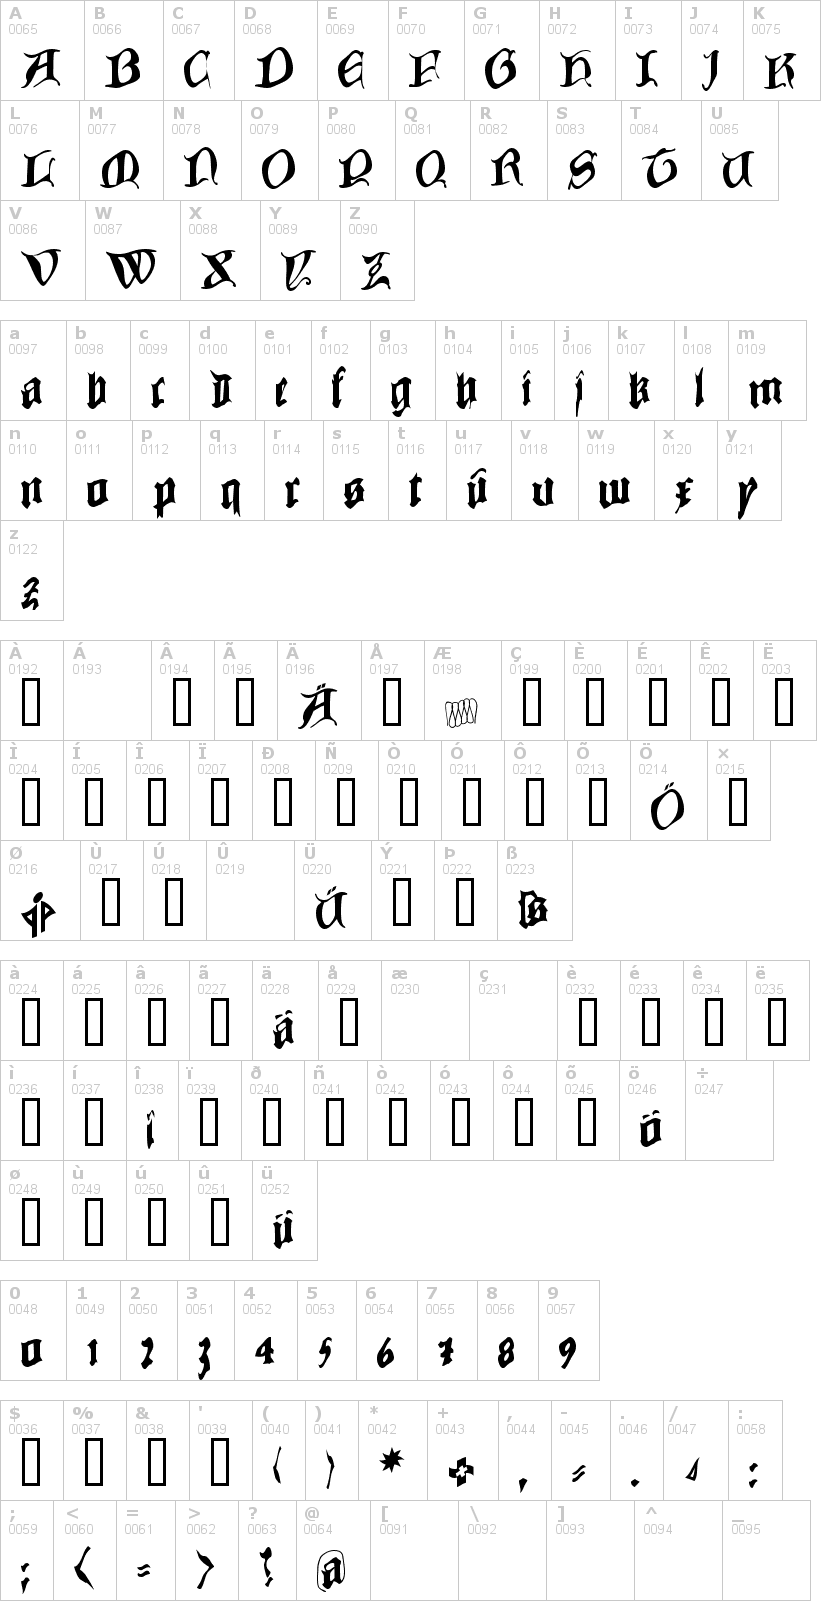 Lettere dell'alfabeto del font cowboy-caxton con le quali è possibile realizzare adesivi prespaziati